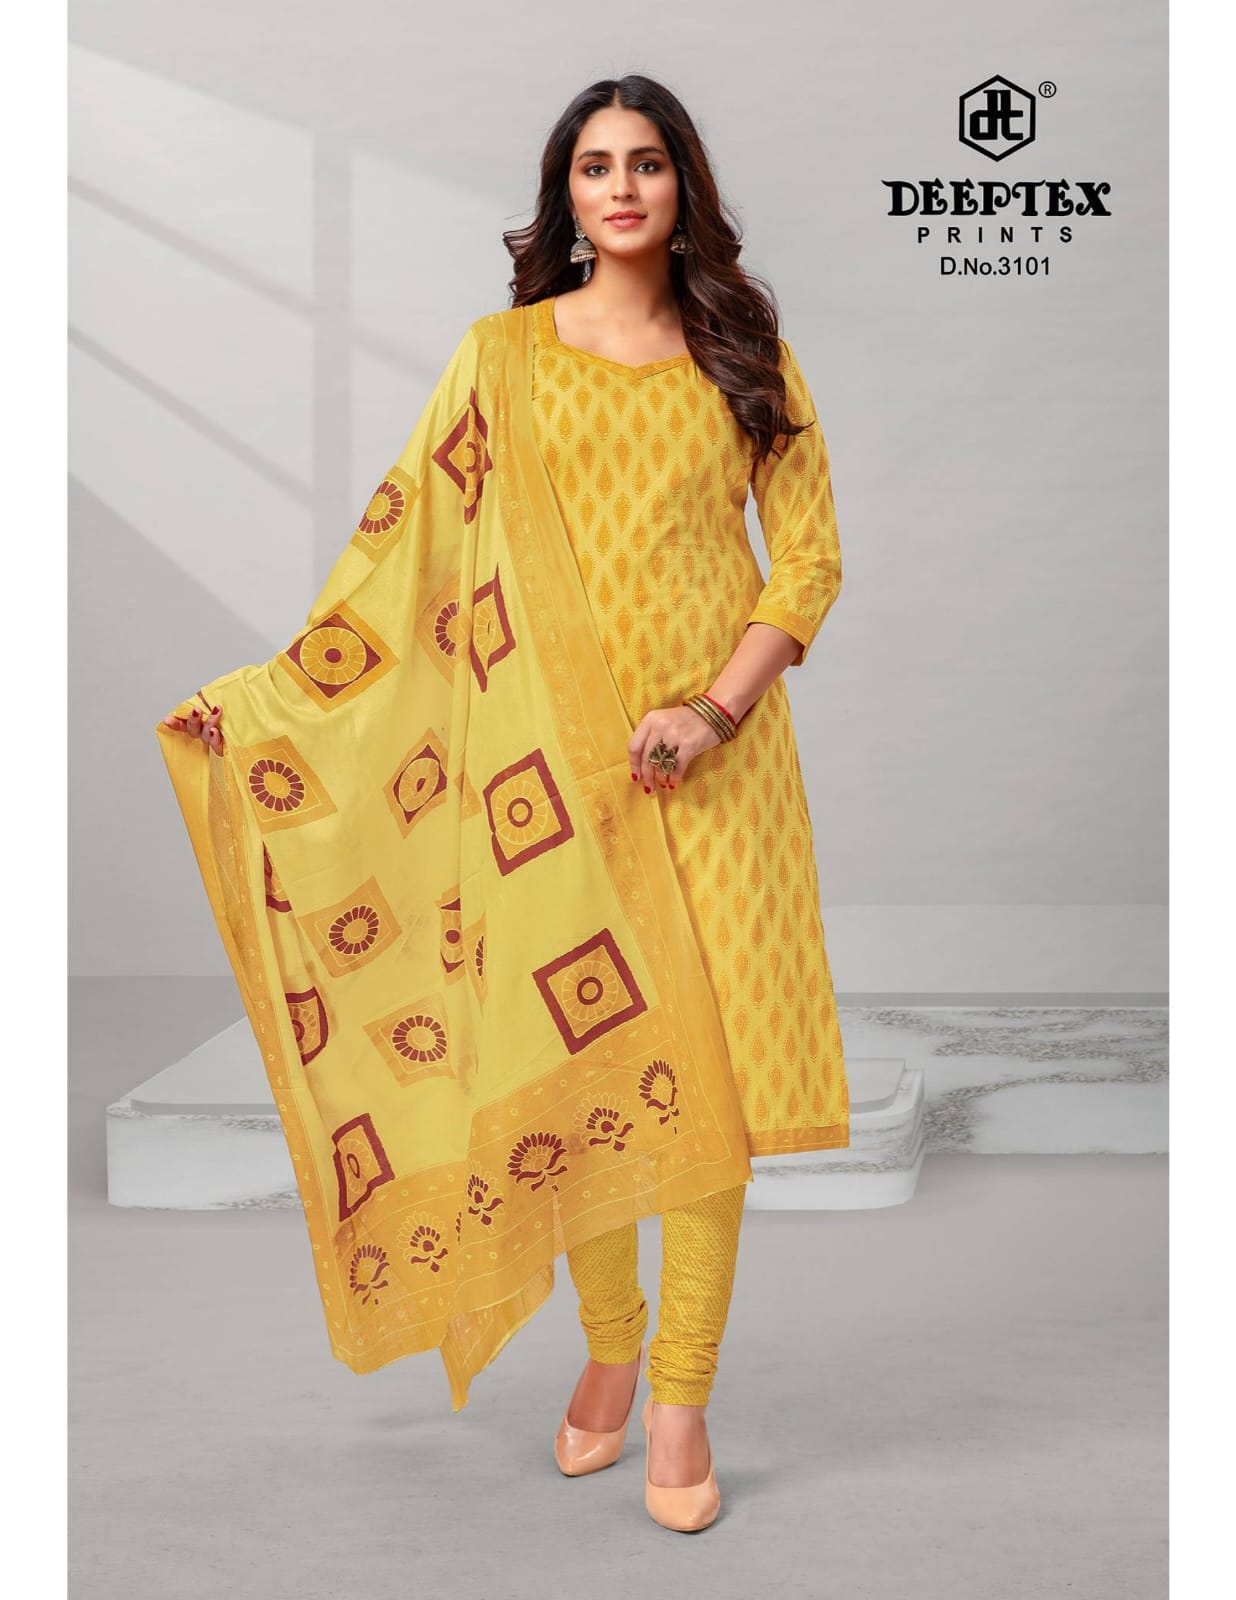 Deeptex 4 Colour 1 Regular Wear Cotton Dress Material Design Catalog